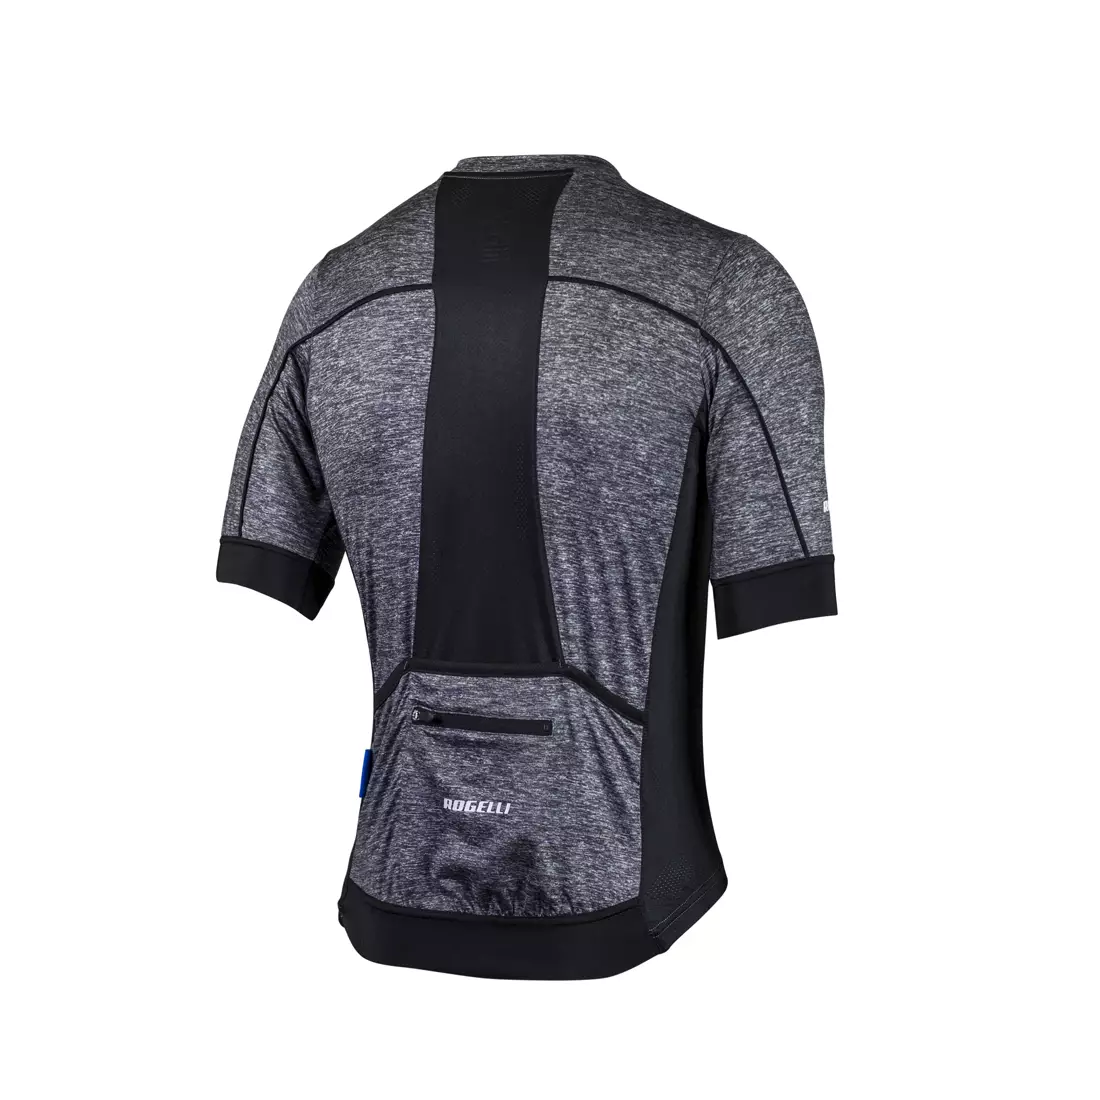 ROGELLI PASSO pánsky cyklistický dres, sivý a čierny